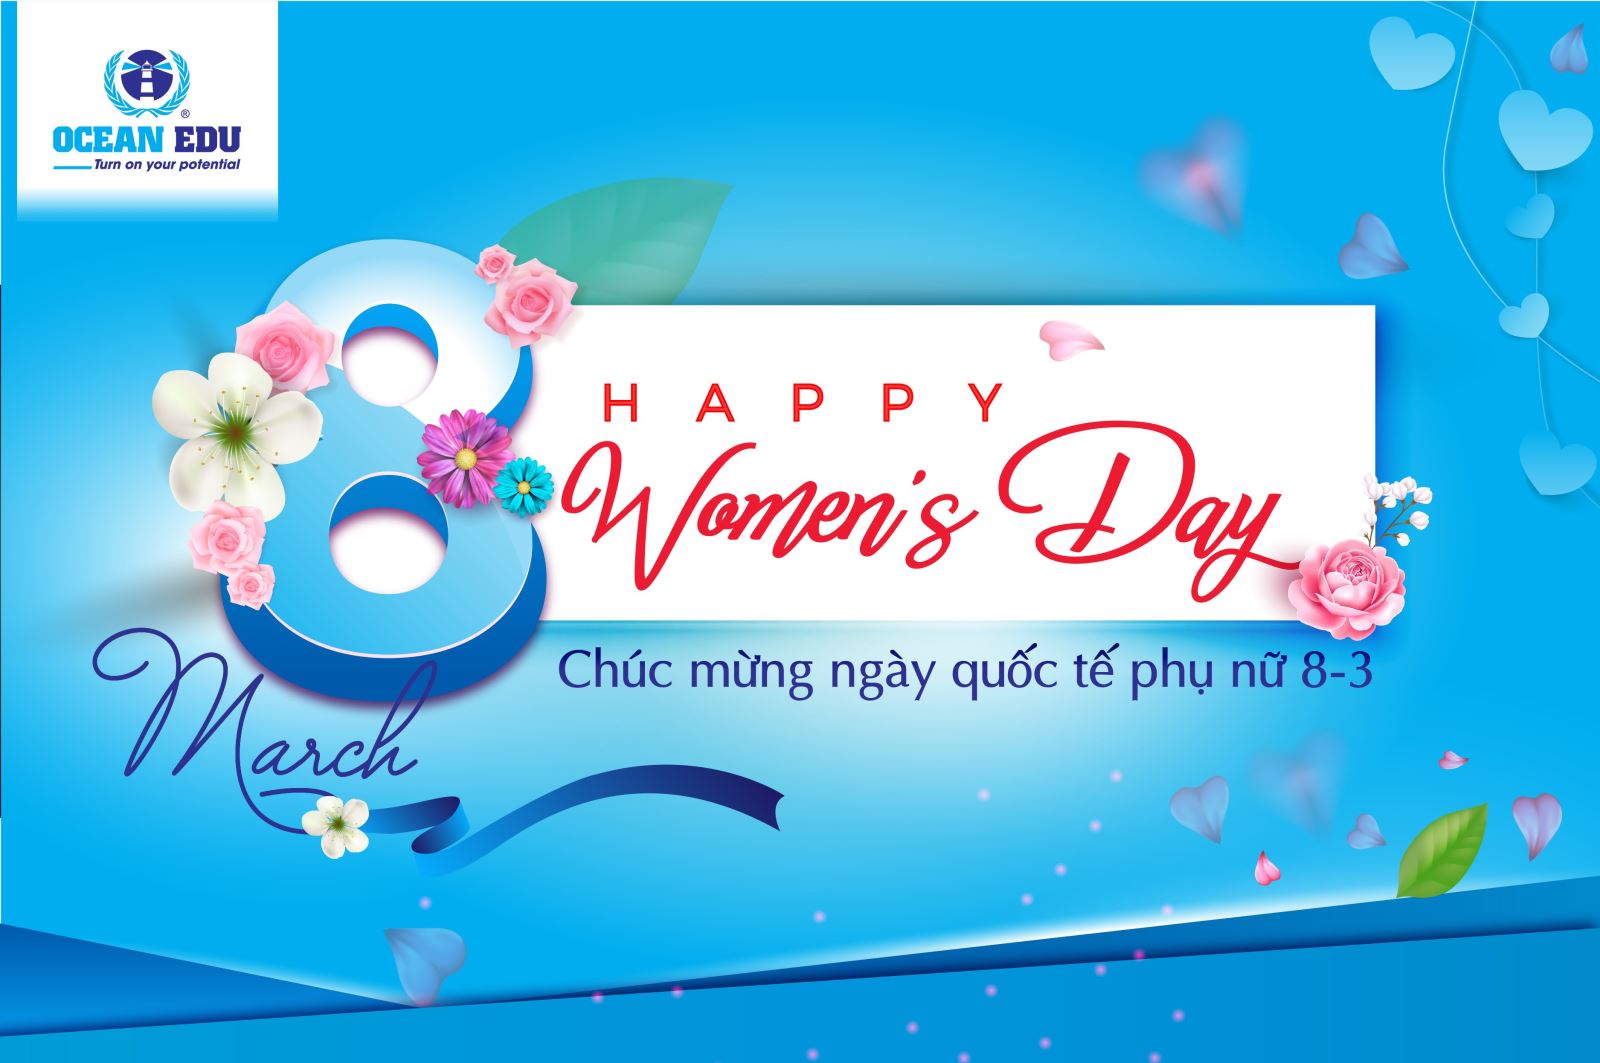 Mùa 8/3 đến rồi, hãy cùng nhau chúc mừng ngày Quốc tế Phụ nữ. Đây là dịp để chúng ta tôn vinh, tôn trọng và yêu quý phụ nữ trong cuộc sống. Chúc các bạn phụ nữ luôn mạnh khỏe, xinh đẹp và thành công trong cuộc sống.